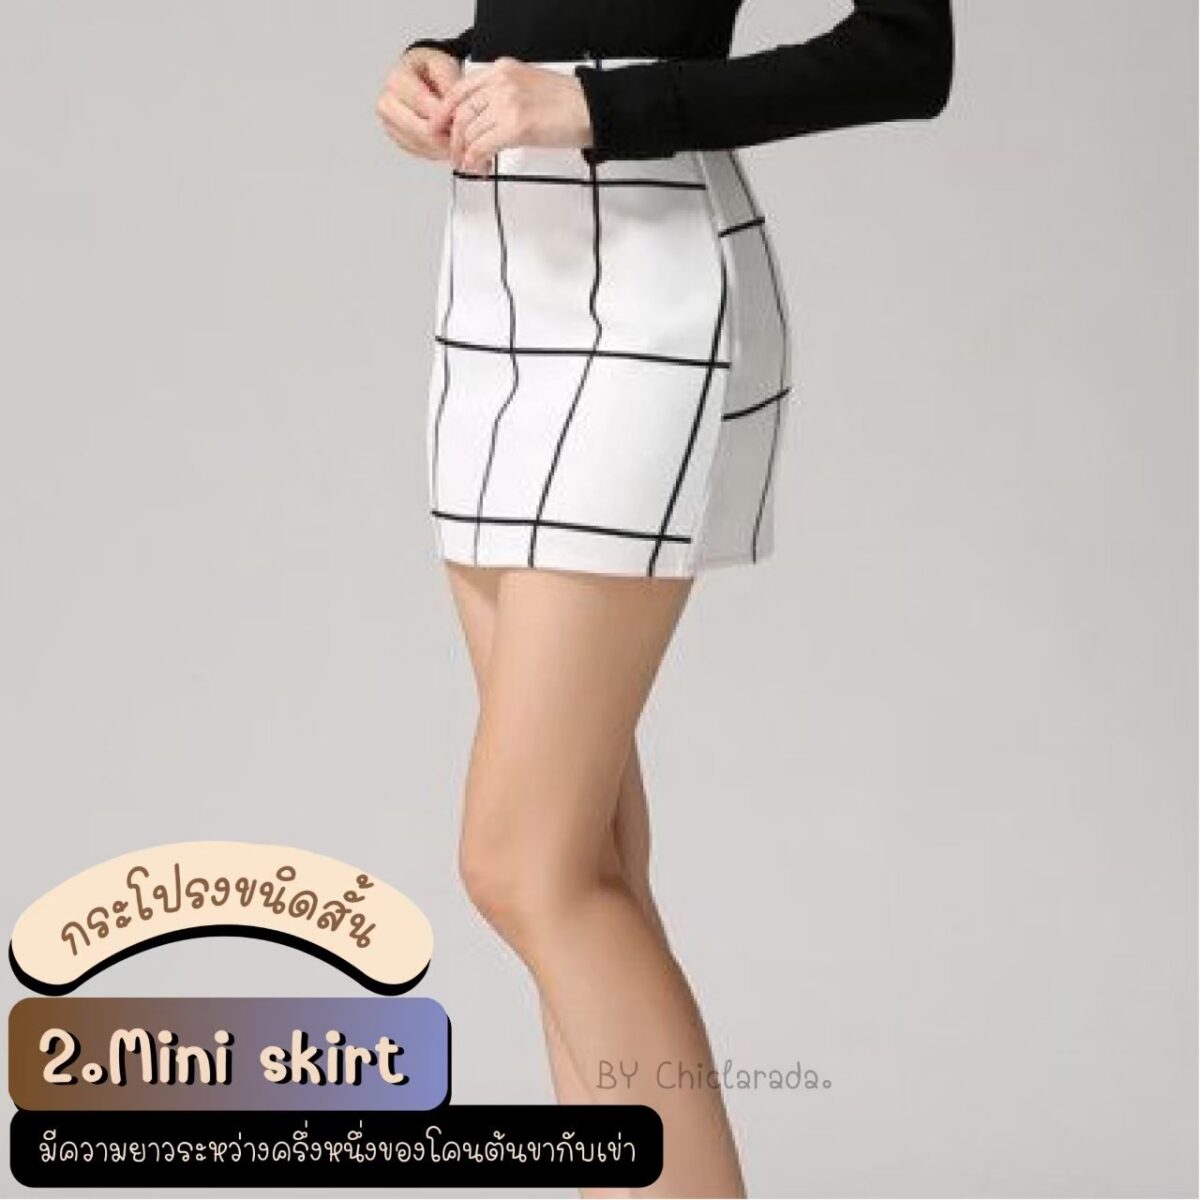 Mini skirt คือกระโปรงที่มีความยาวครึ่งหนึ่งระหว่างต้นขากับเข่า